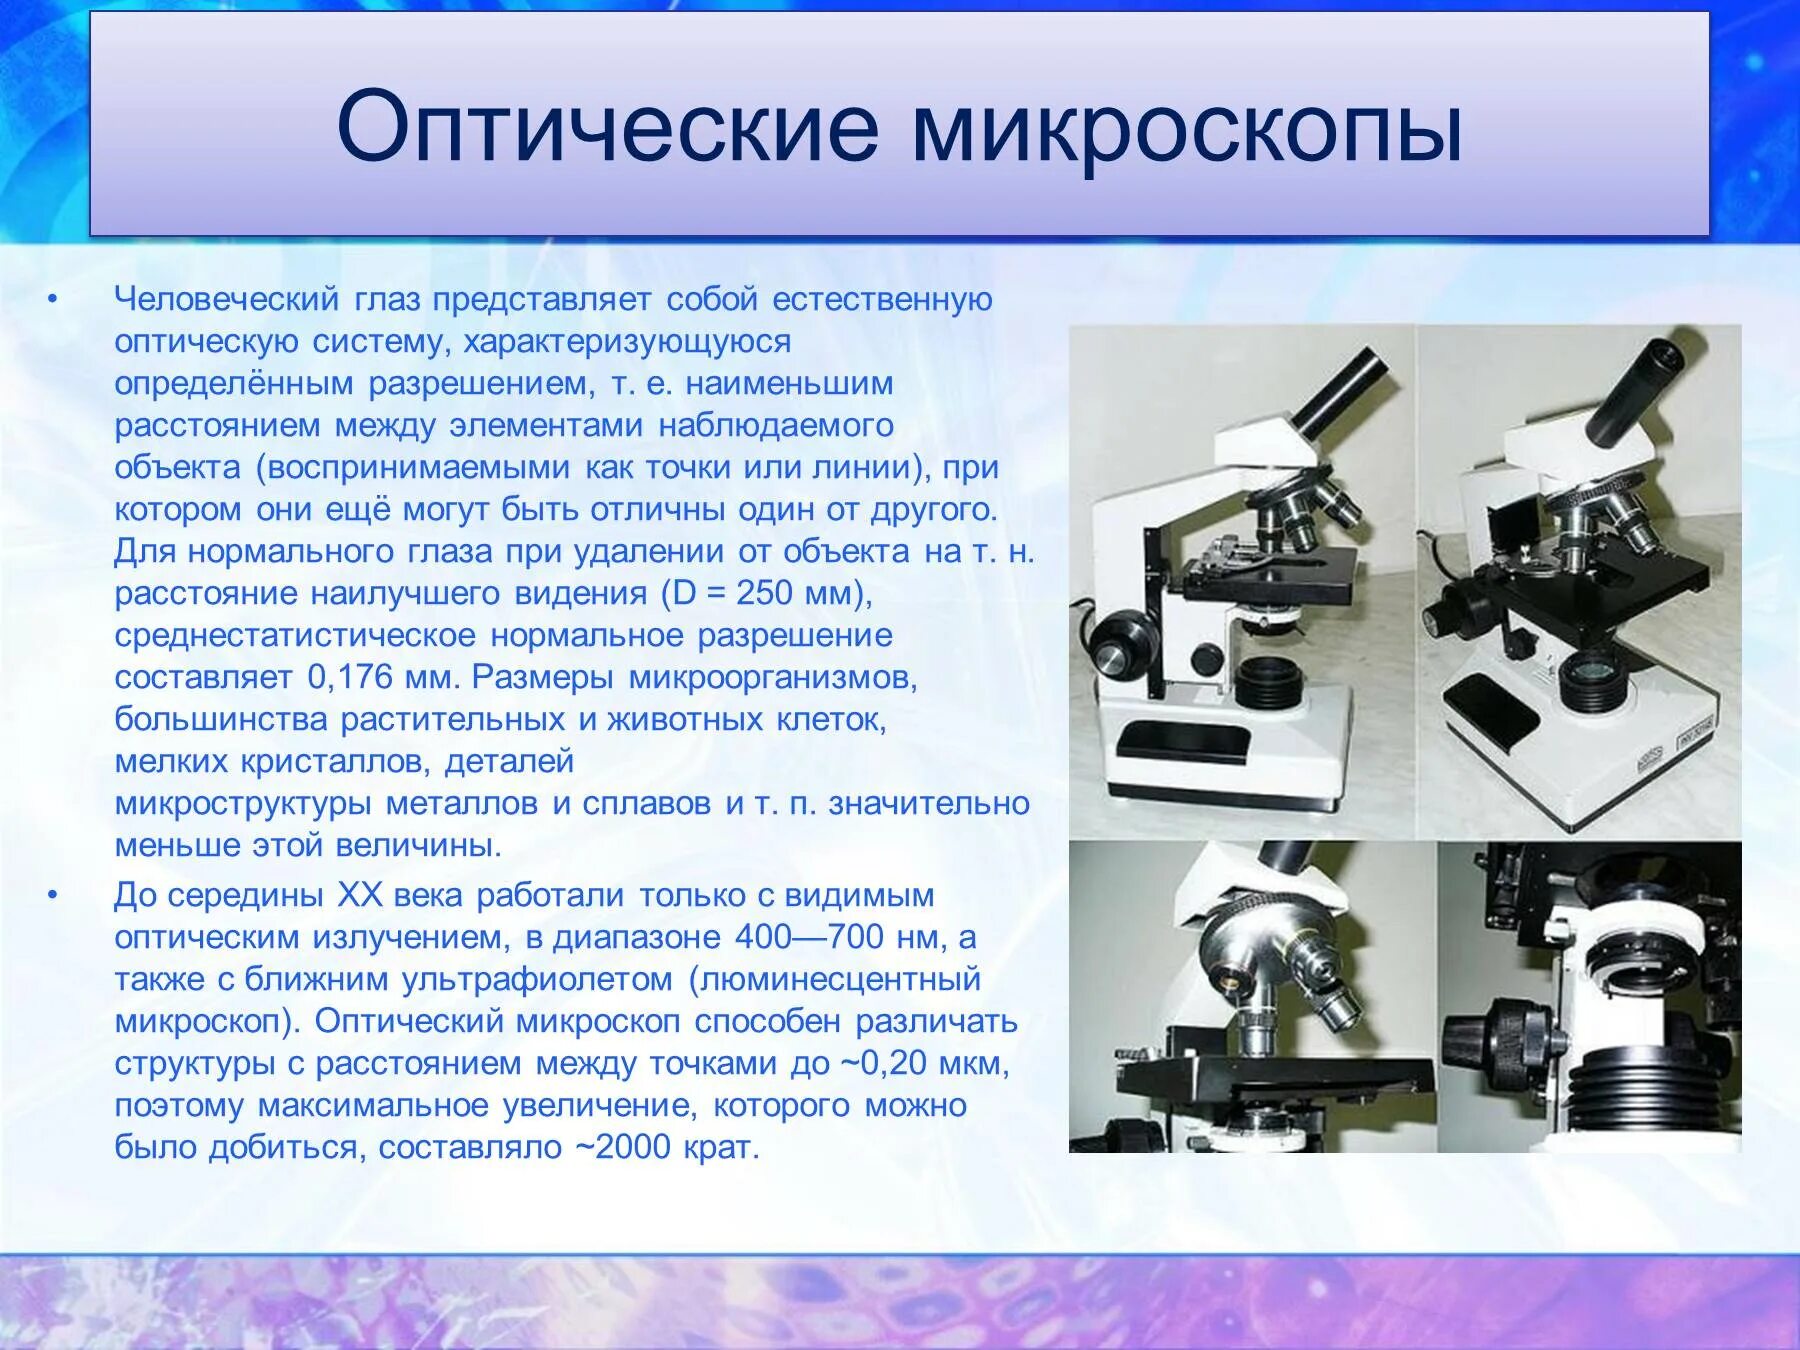 Анализ произведения микроскоп. Оптическая микроскопия оптическая система микроскопа. Микроскоп оптический ССР. Современный оптический микроскоп. Структура оптического микроскопа.